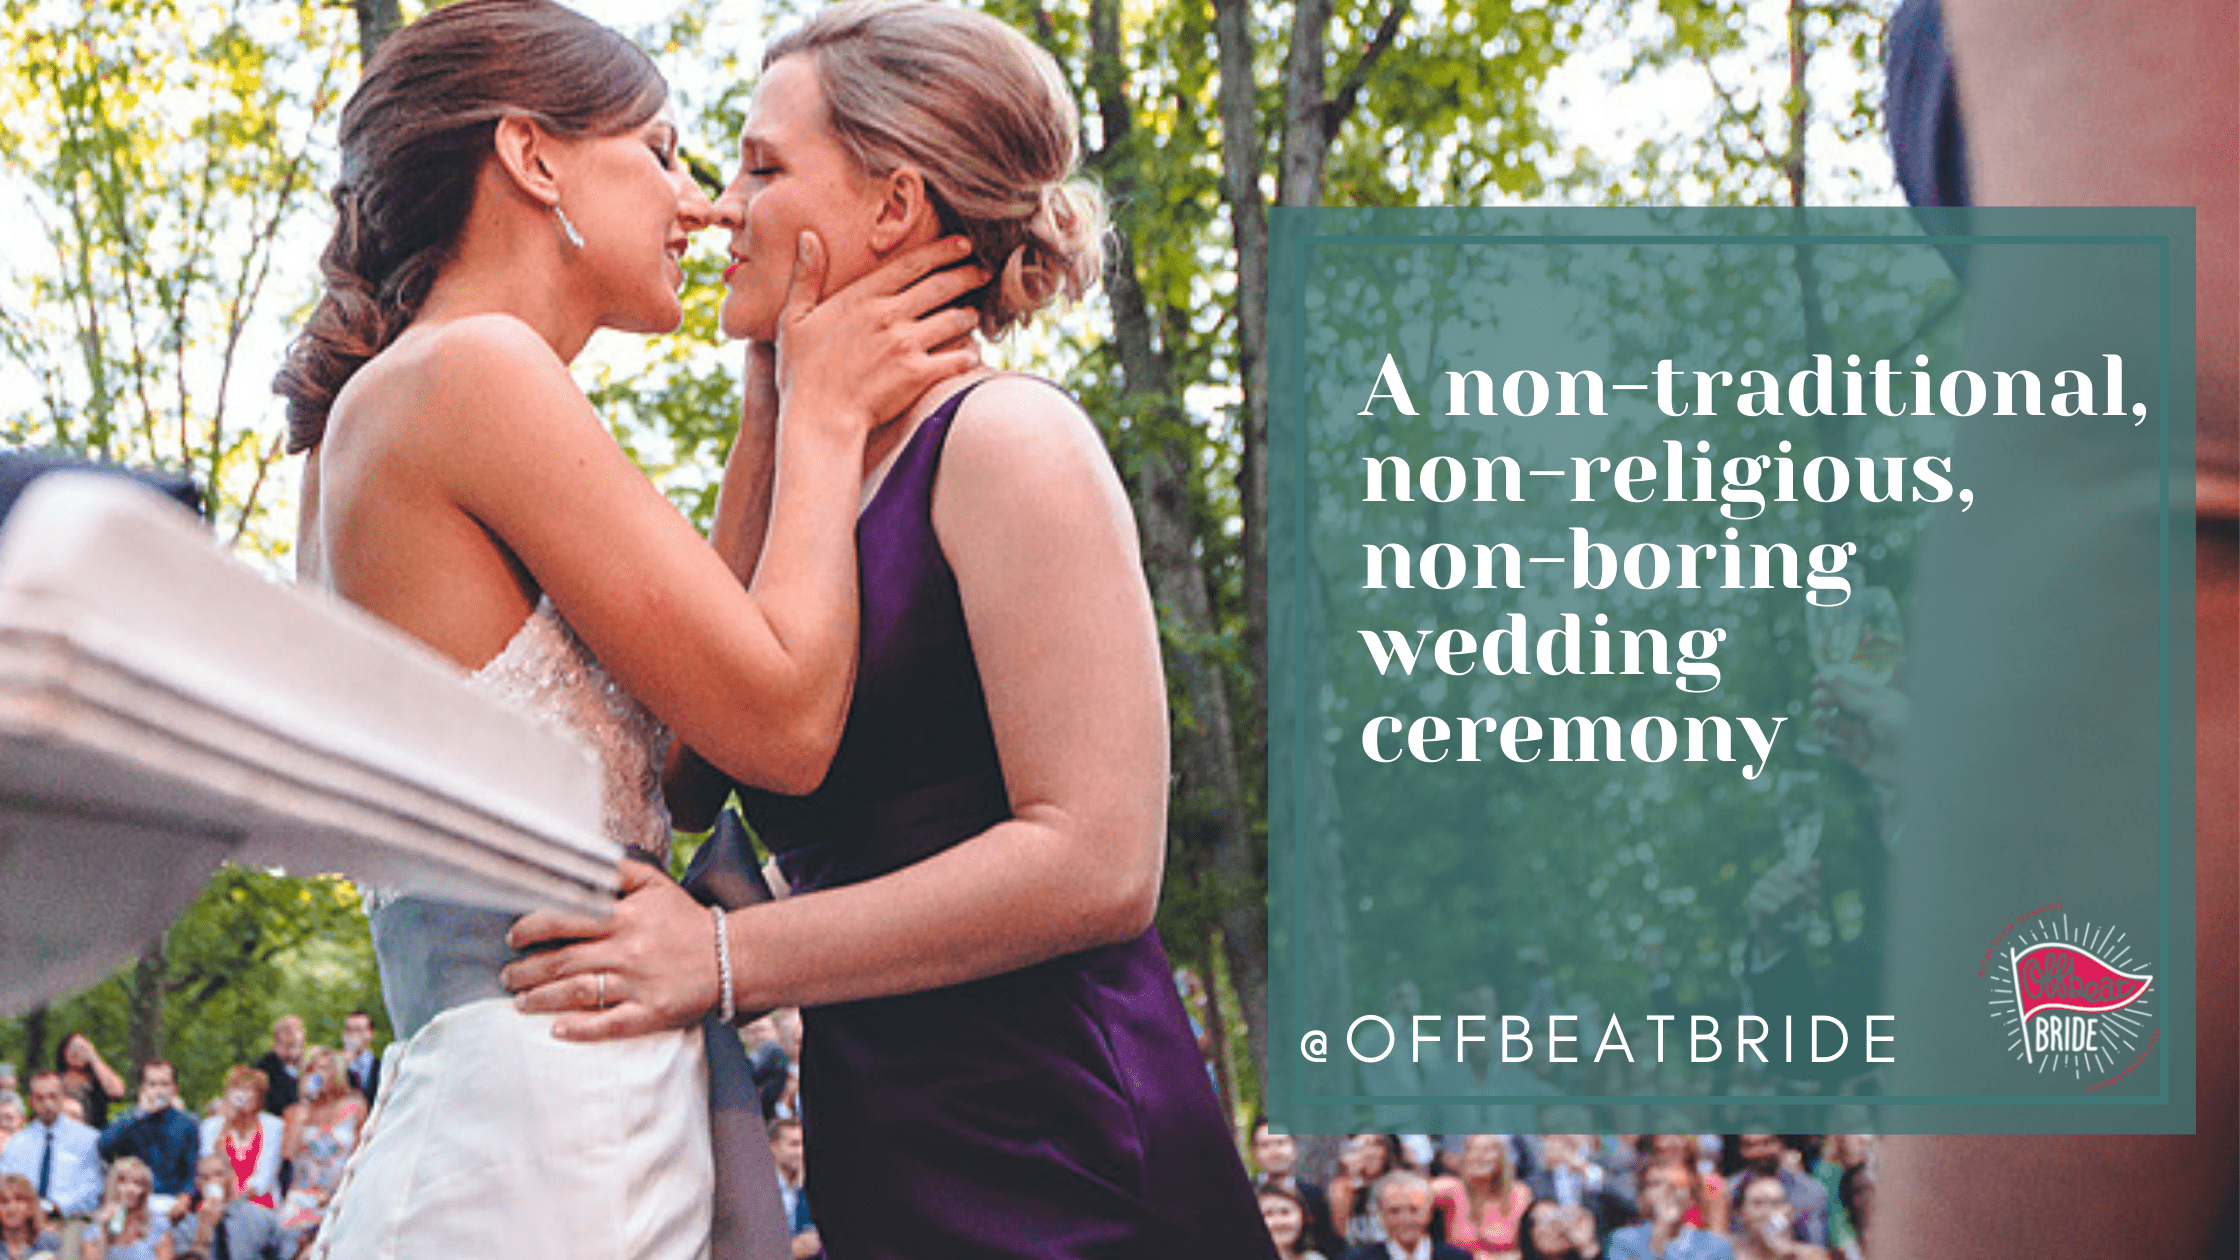 Non-traditional and non-boring wedding ceremony script